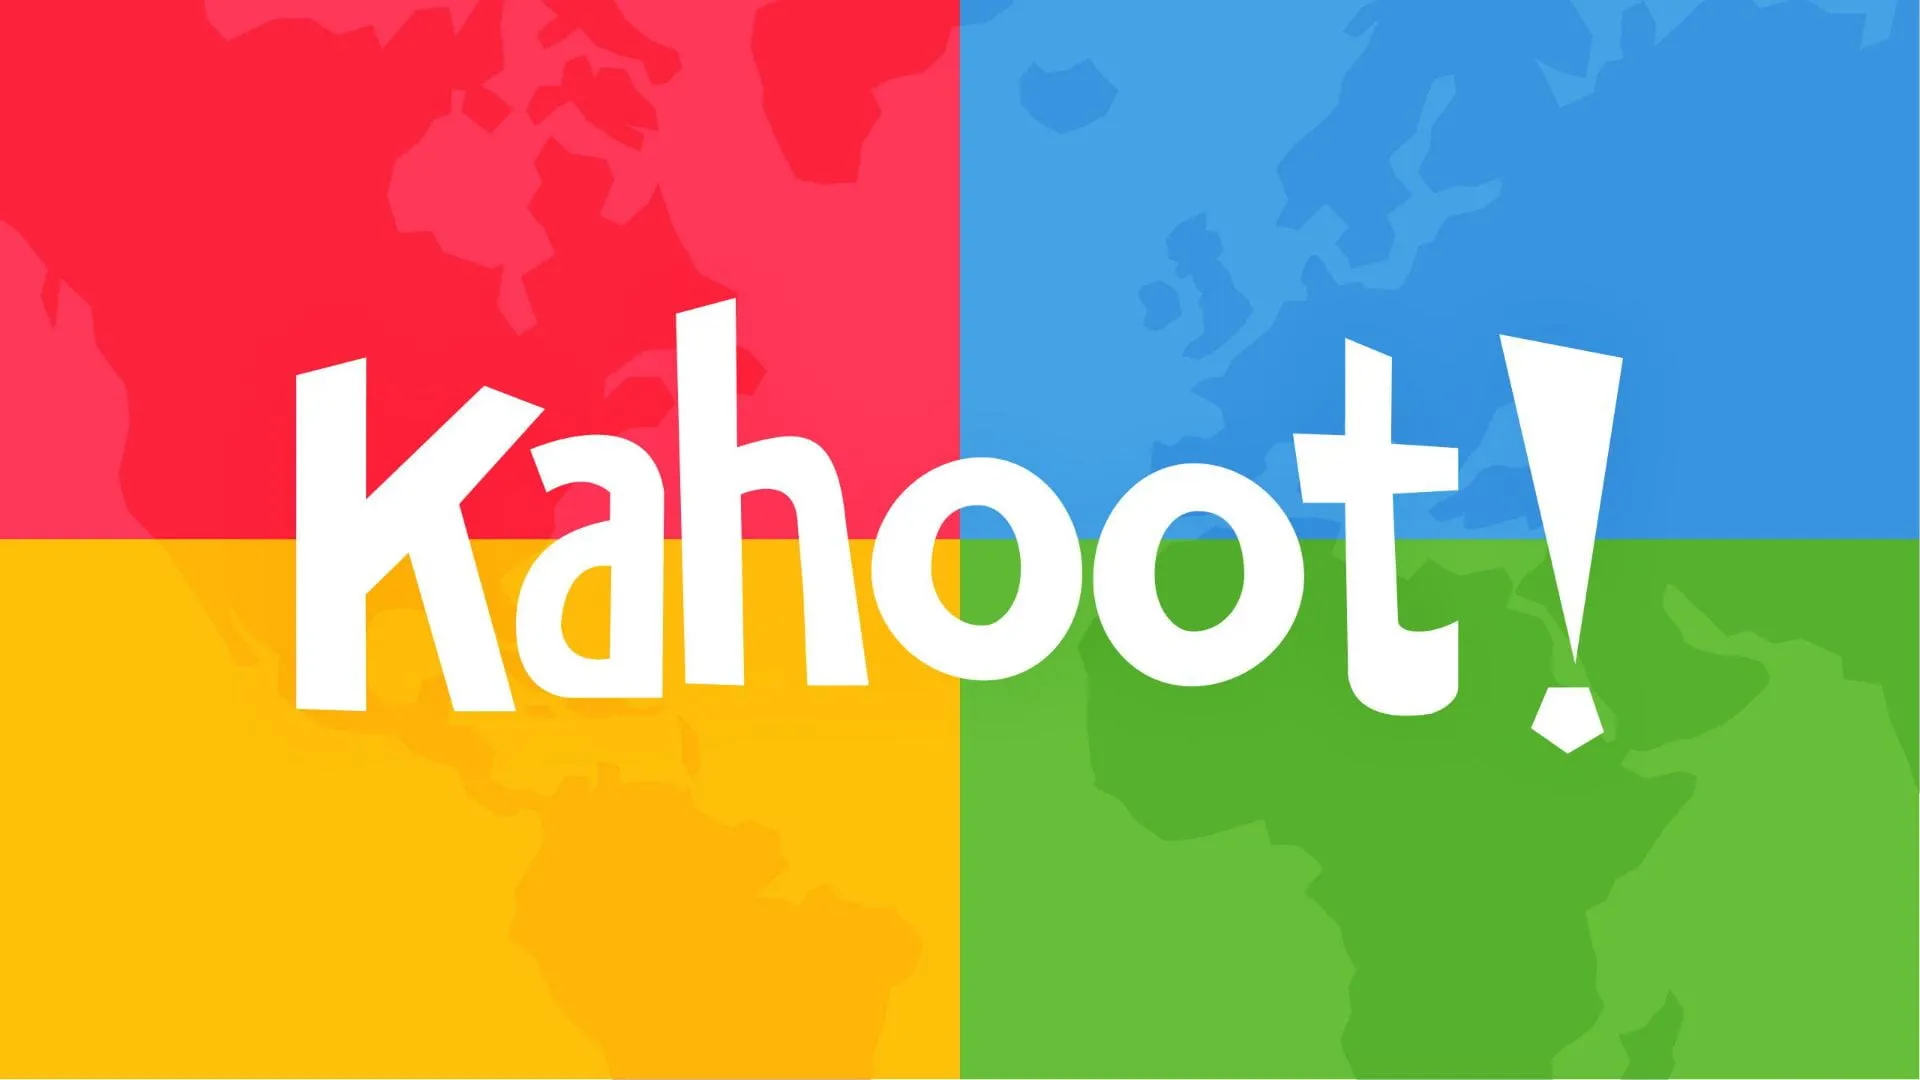 Cách sử dụng Kahoot trên điện thoại để tạo game dễ dàng